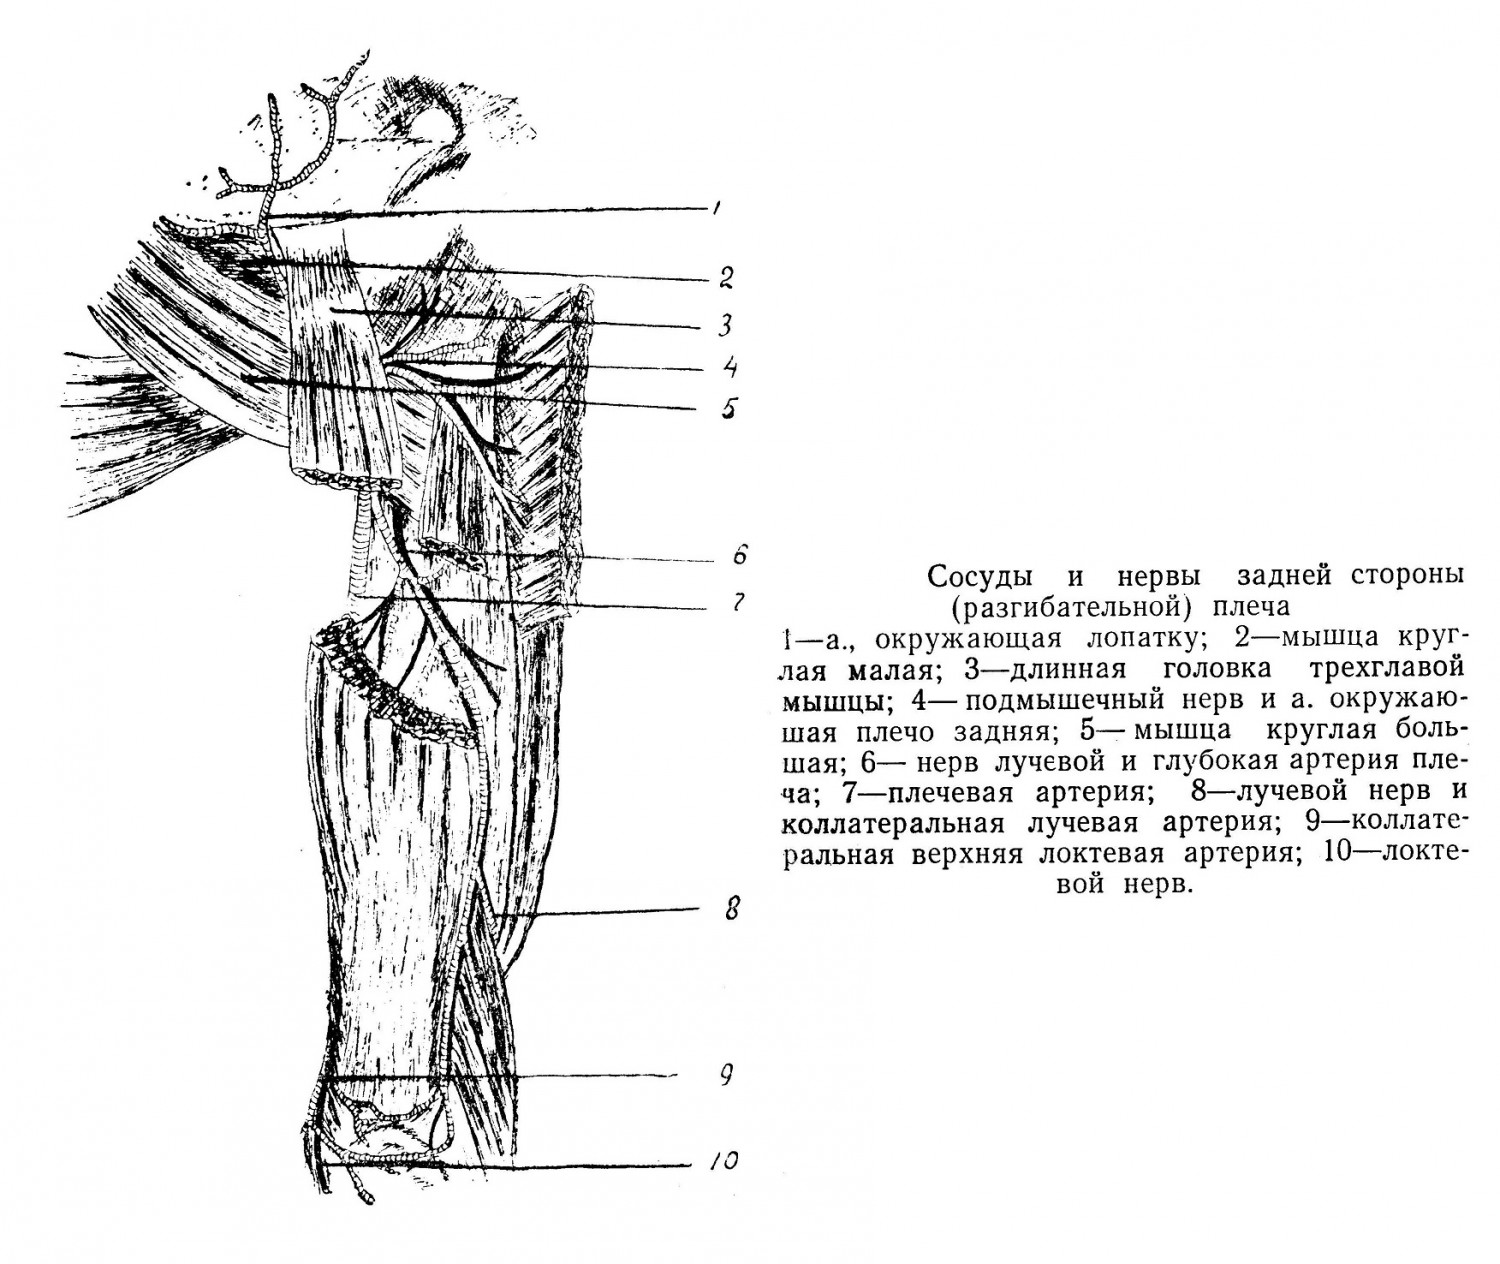 Сосуды и нервы задней стороны (разгибательной) плеча